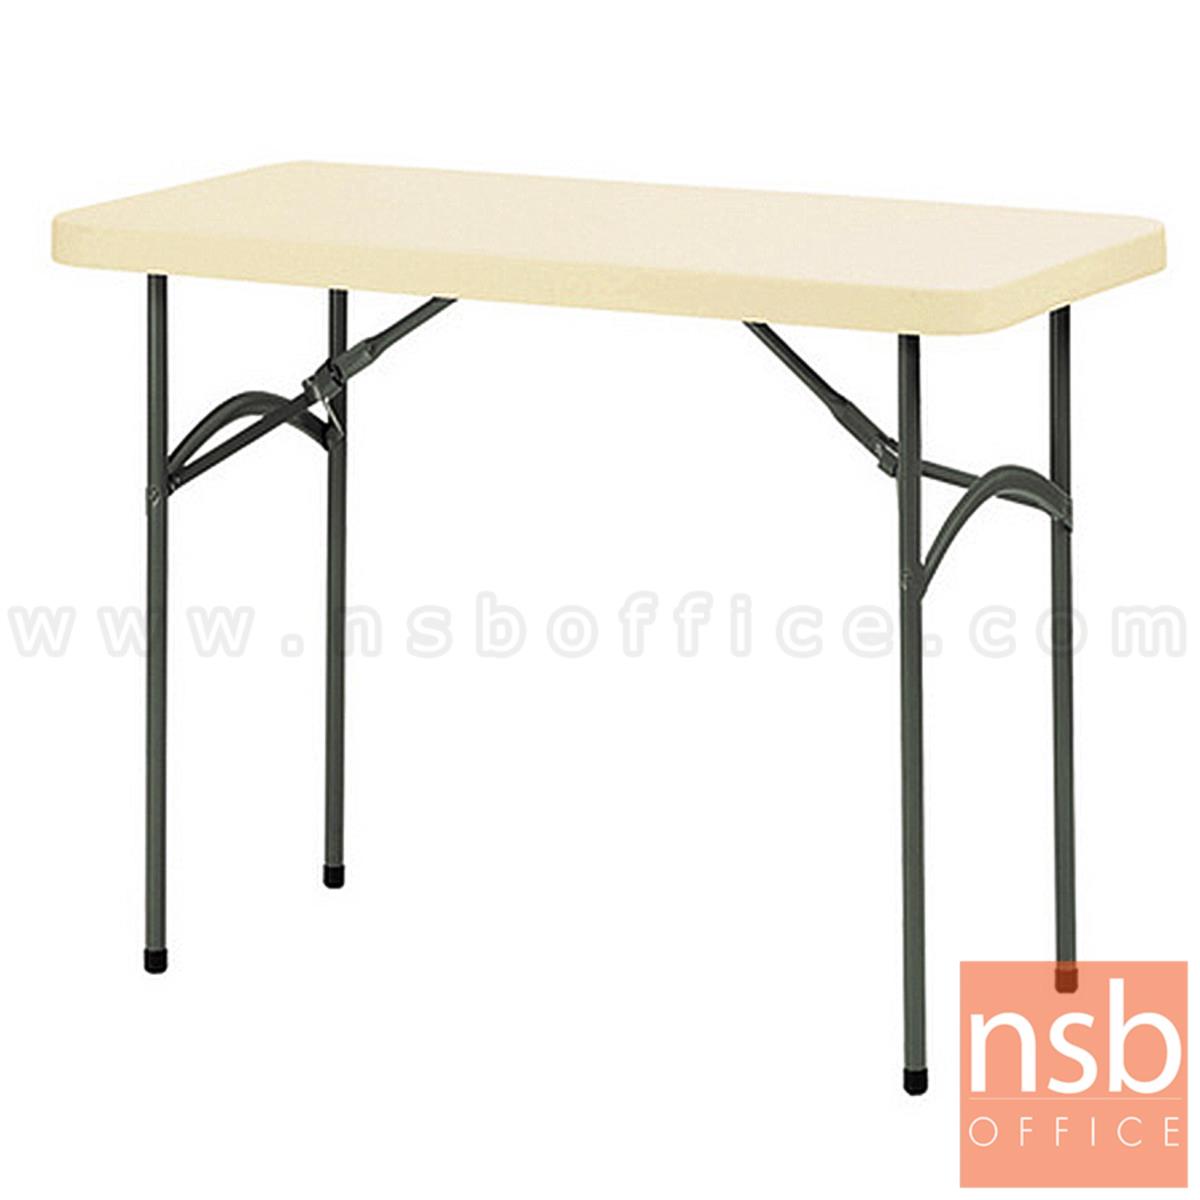 A19A036:โต๊ะพับหน้าพลาสติก รุ่น Newburry (นิวเบอรี่) ขนาด 121W cm.  ขาเหล็กพ่นสี